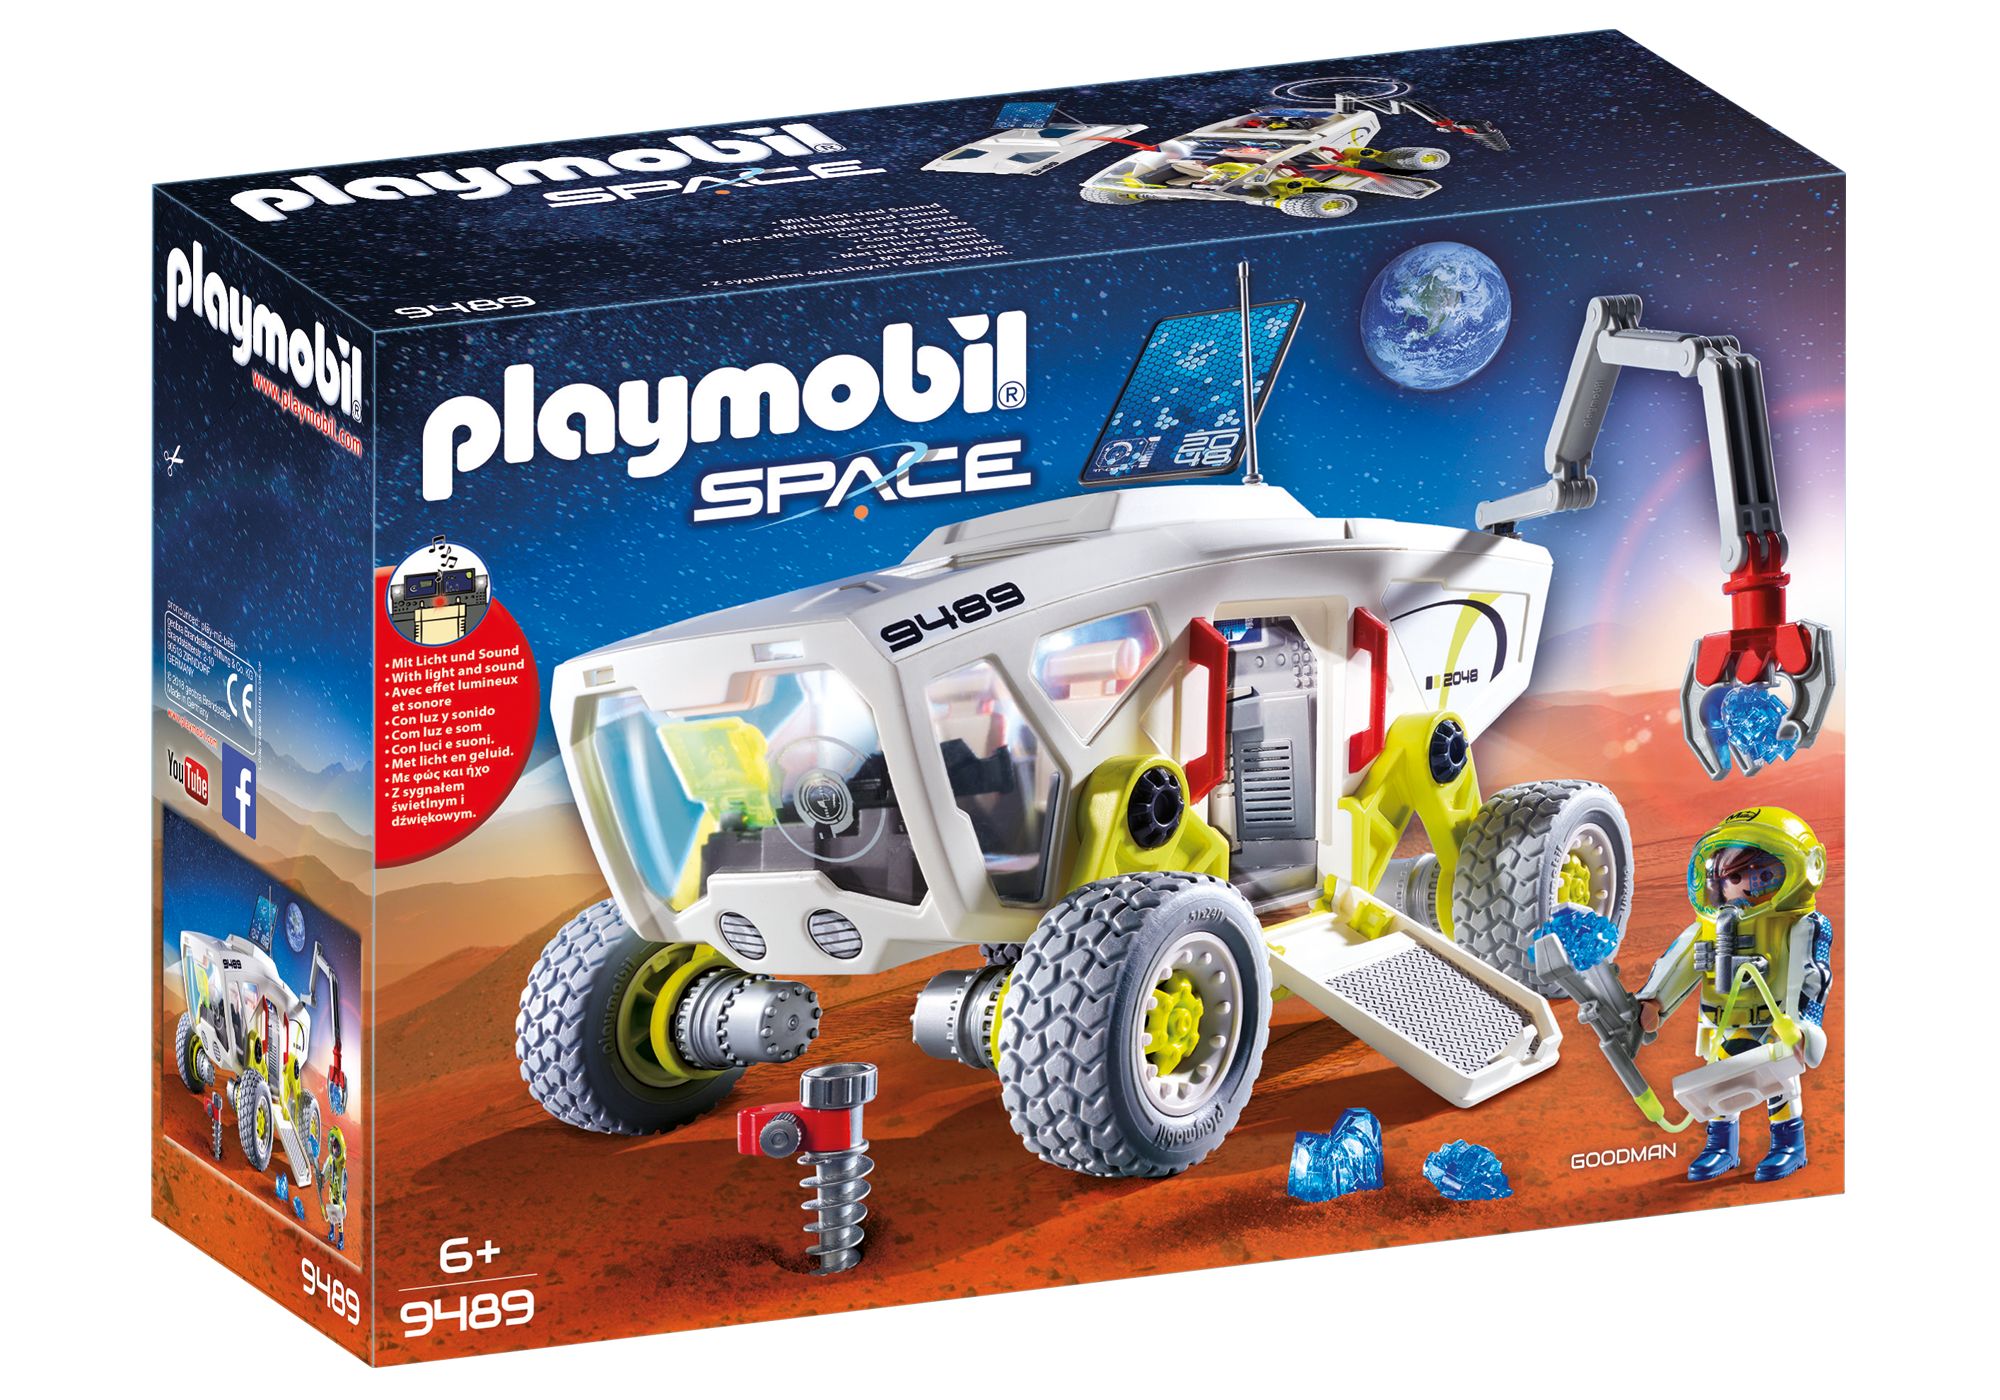 Playmobil Space 2018 9489_product_box_front?locale=de-DE,de,*&$pdp_product_main_xl$&strip=true